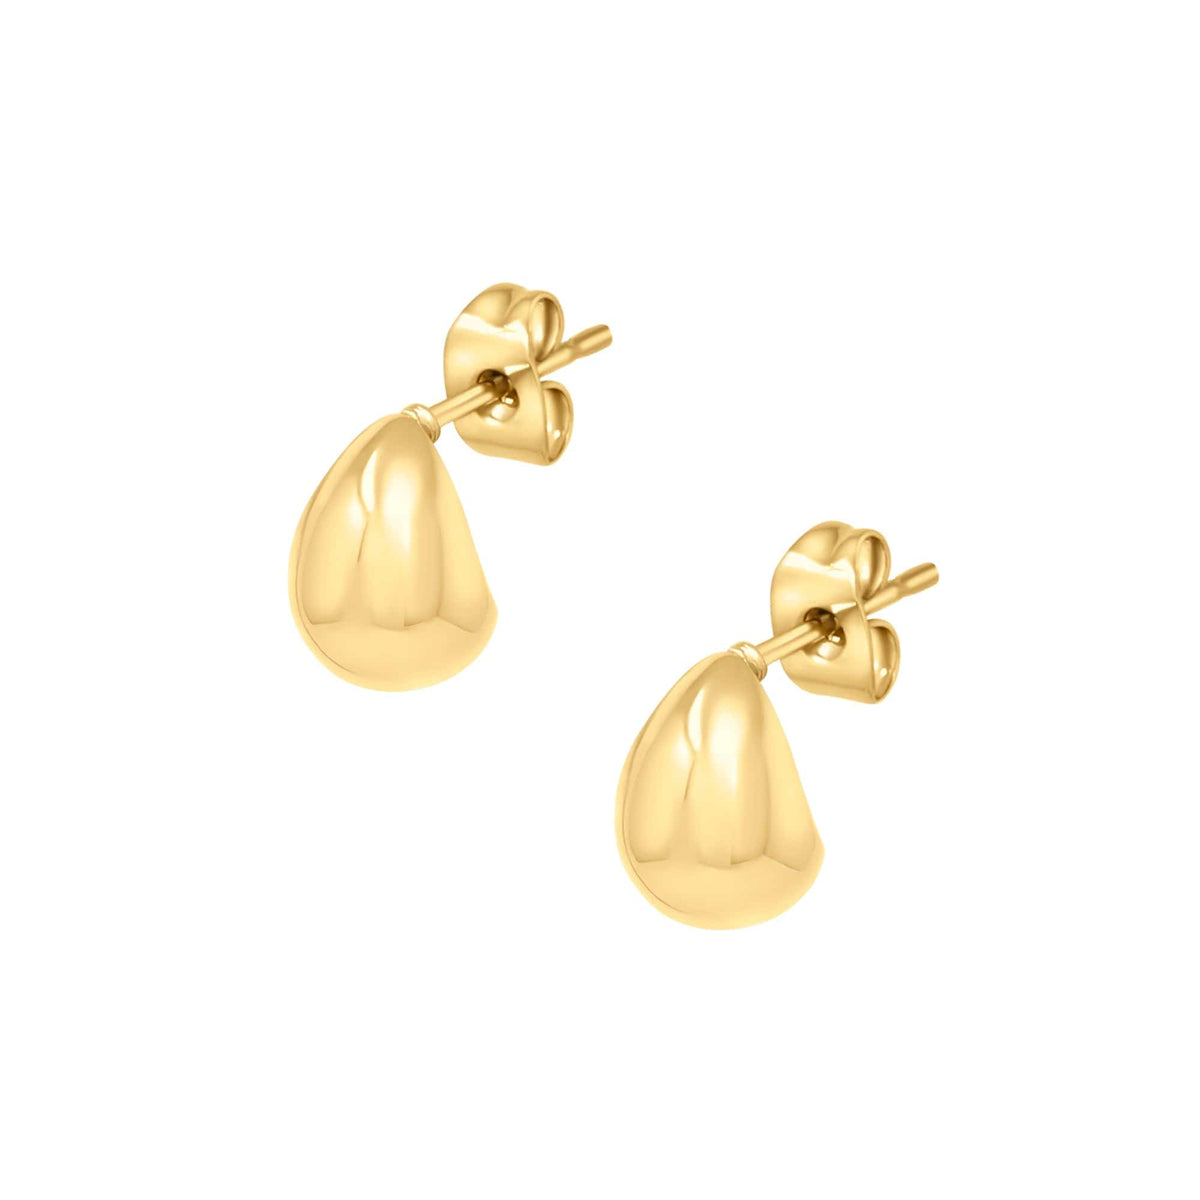 BOHOMOON Stainless Steel Larsa Stud Earrings Gold